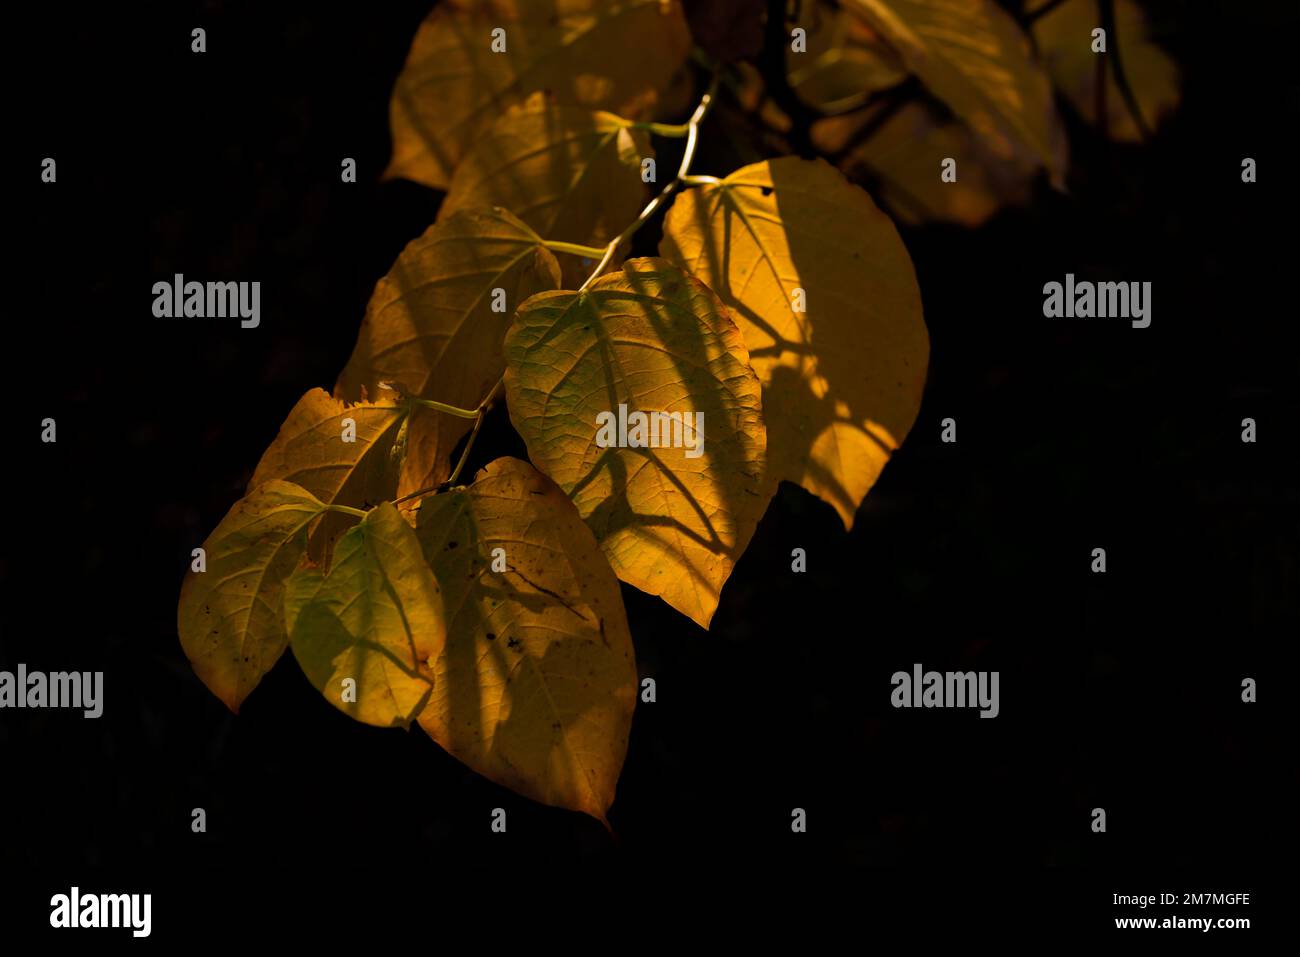 Feuilles décolorées sur un jeune arbre en automne, arrière-fond sombre Banque D'Images